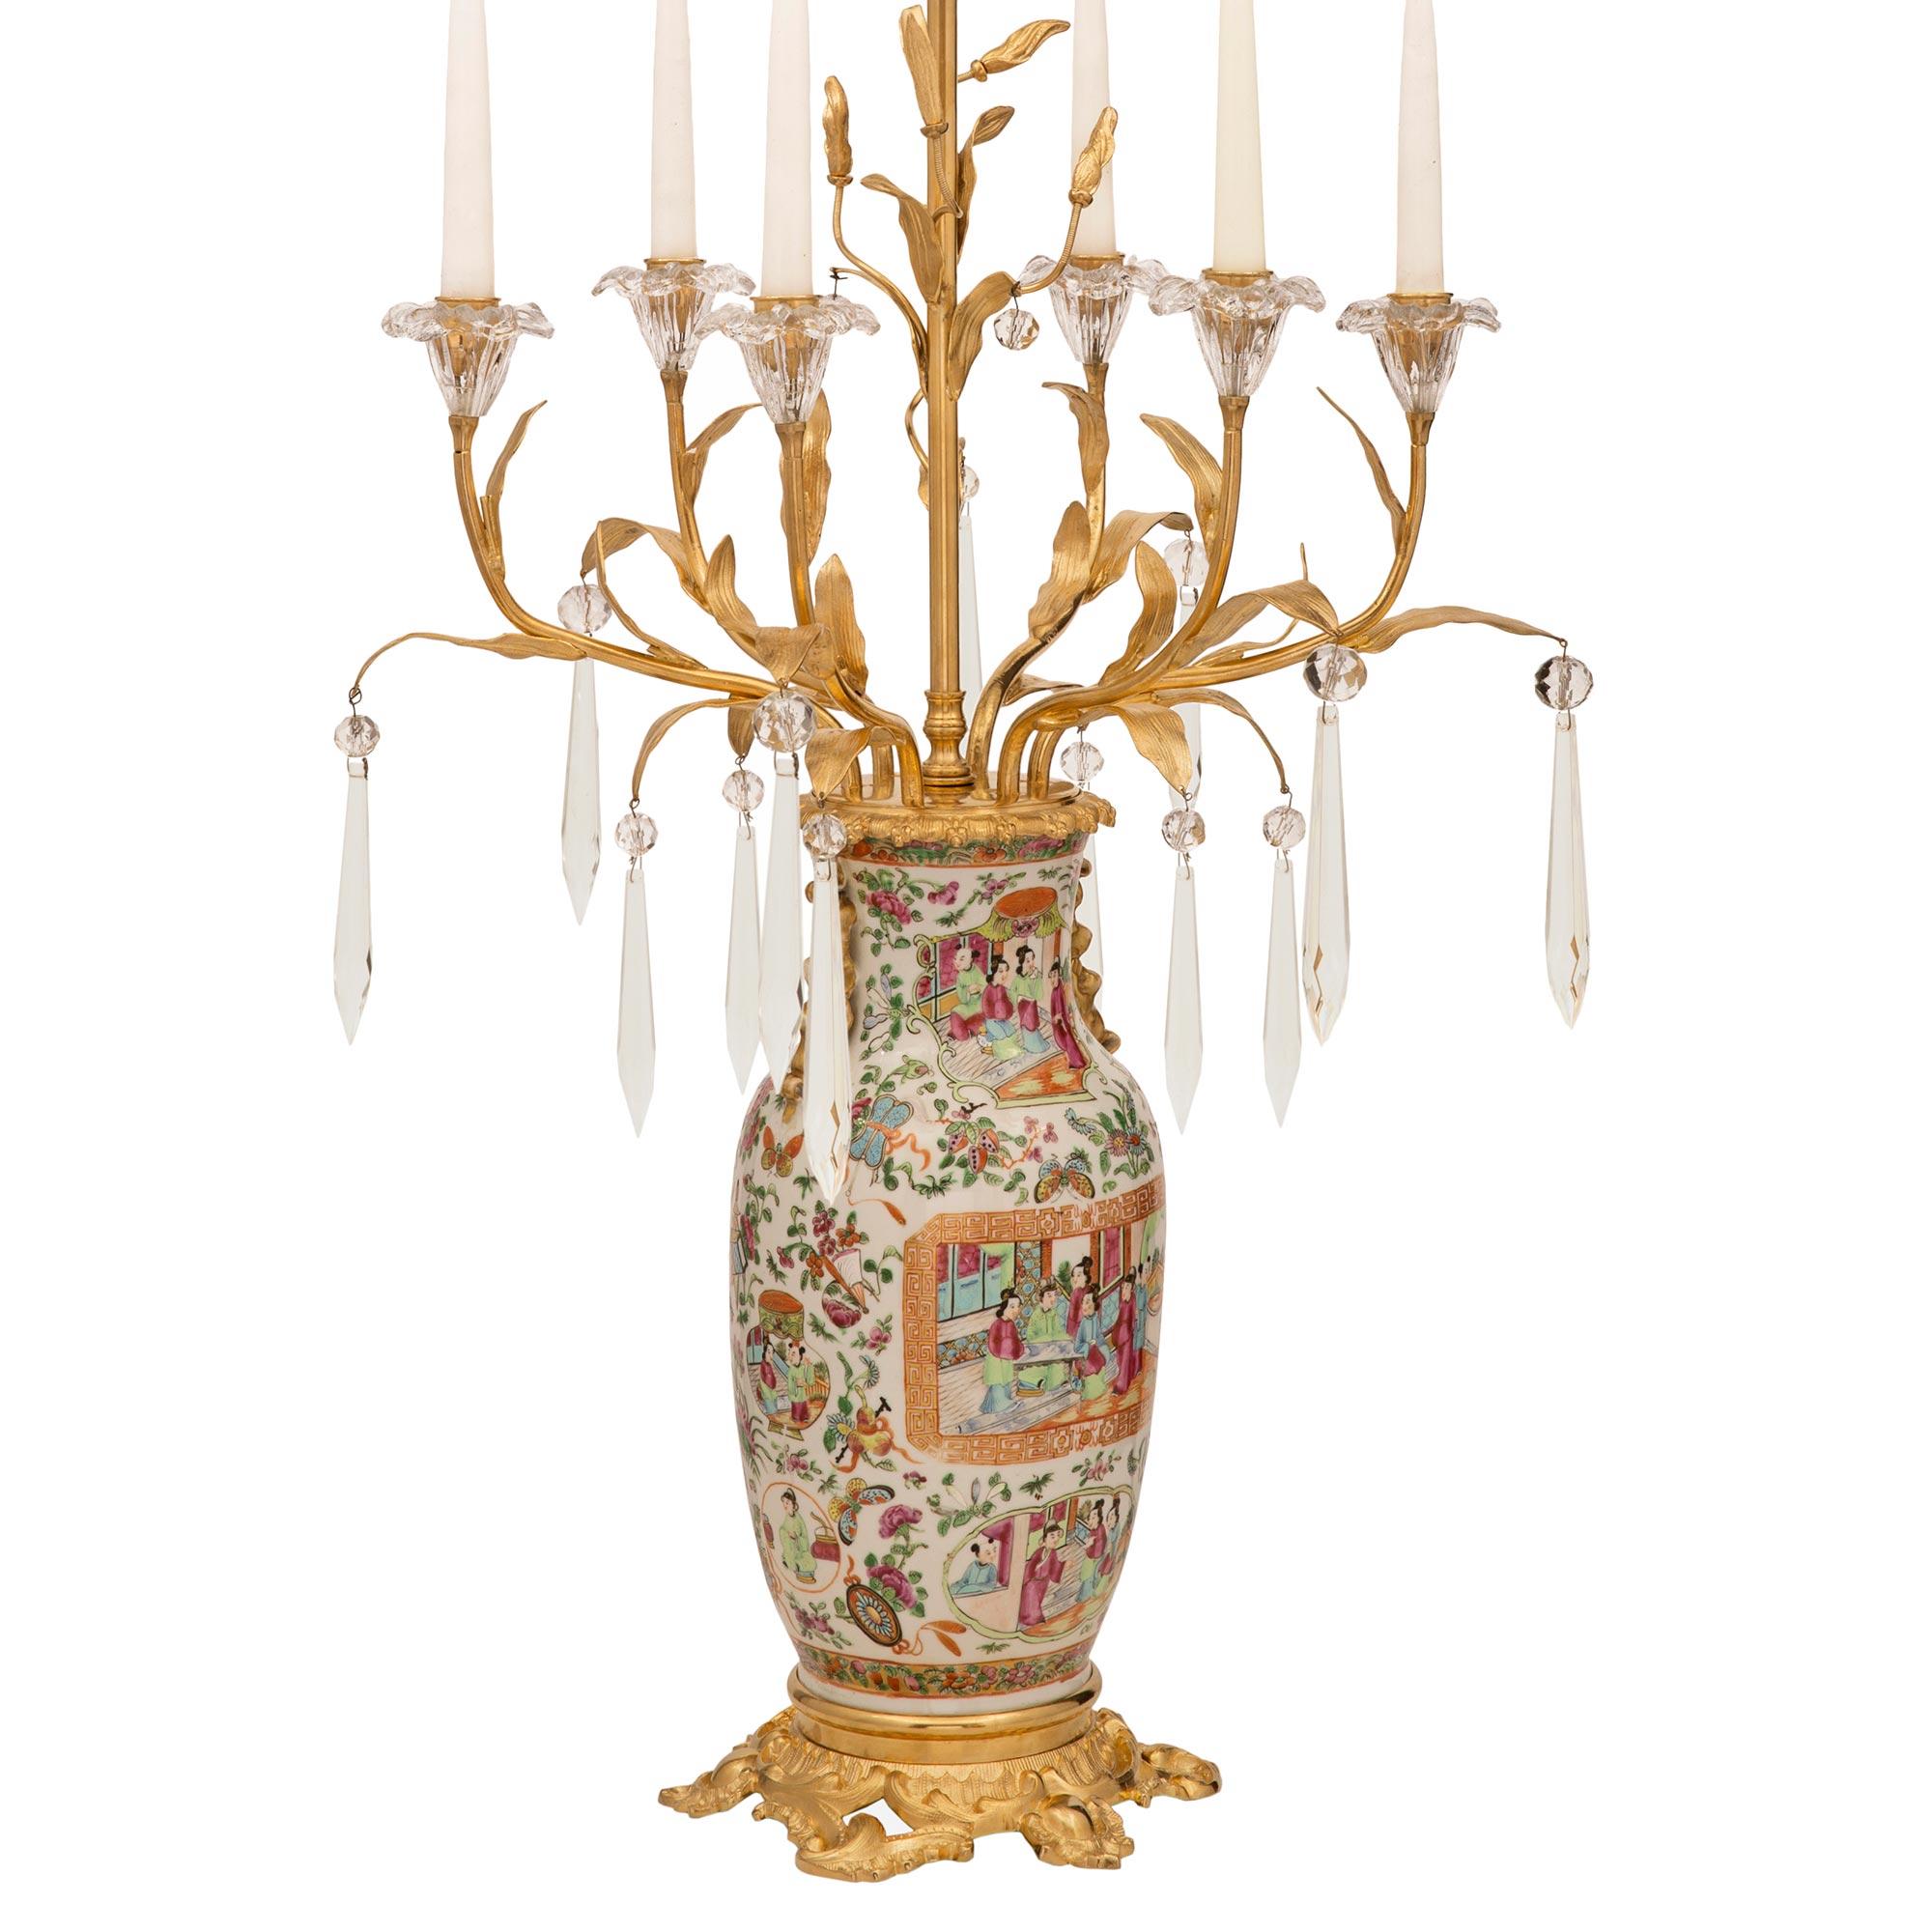 Une paire impressionnante et extrêmement décorative de lampes en porcelaine, cristal et bronze doré de style Louis XV et de collaboration asiatique du 19ème siècle. Chaque lampe est surélevée par une élégante base en bronze doré ciselé et richement